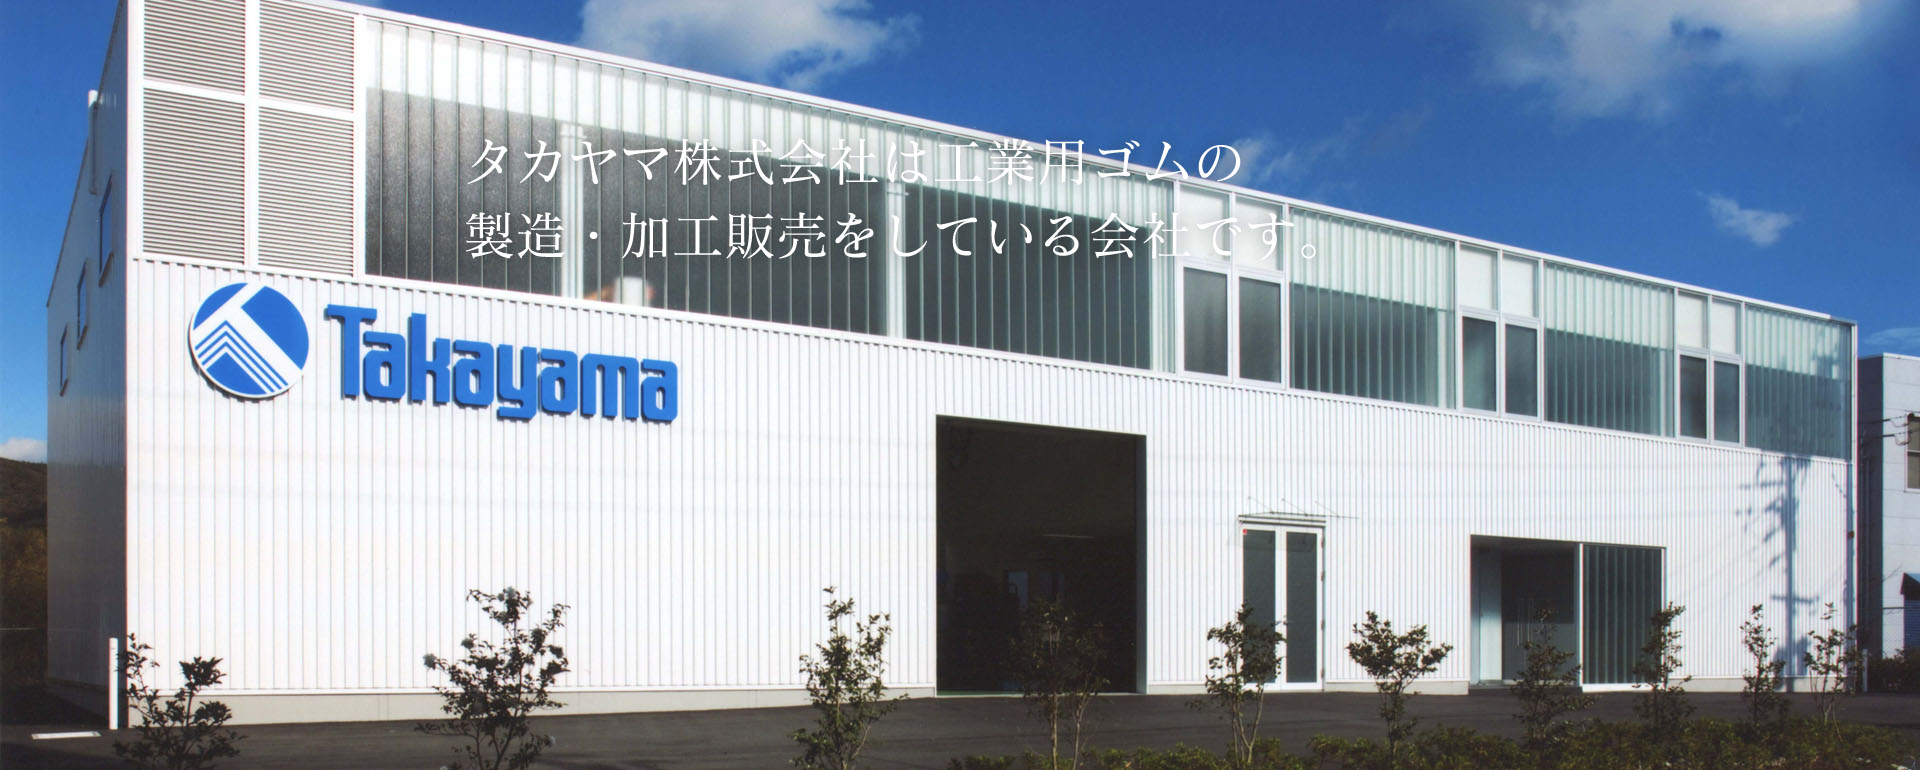 タカヤマ株式会社は工業用ゴムの製造・加工販売をしている会社です